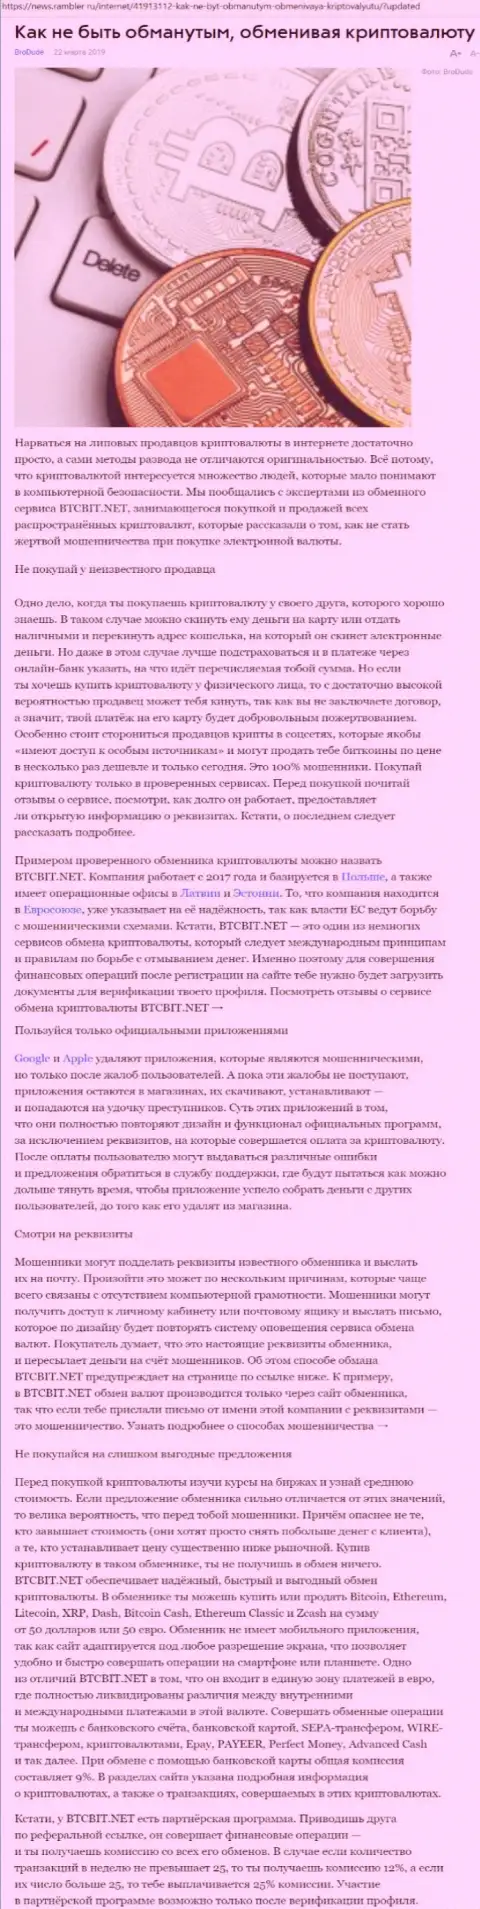 Статья о компании BTCBIT Net на news rambler ru